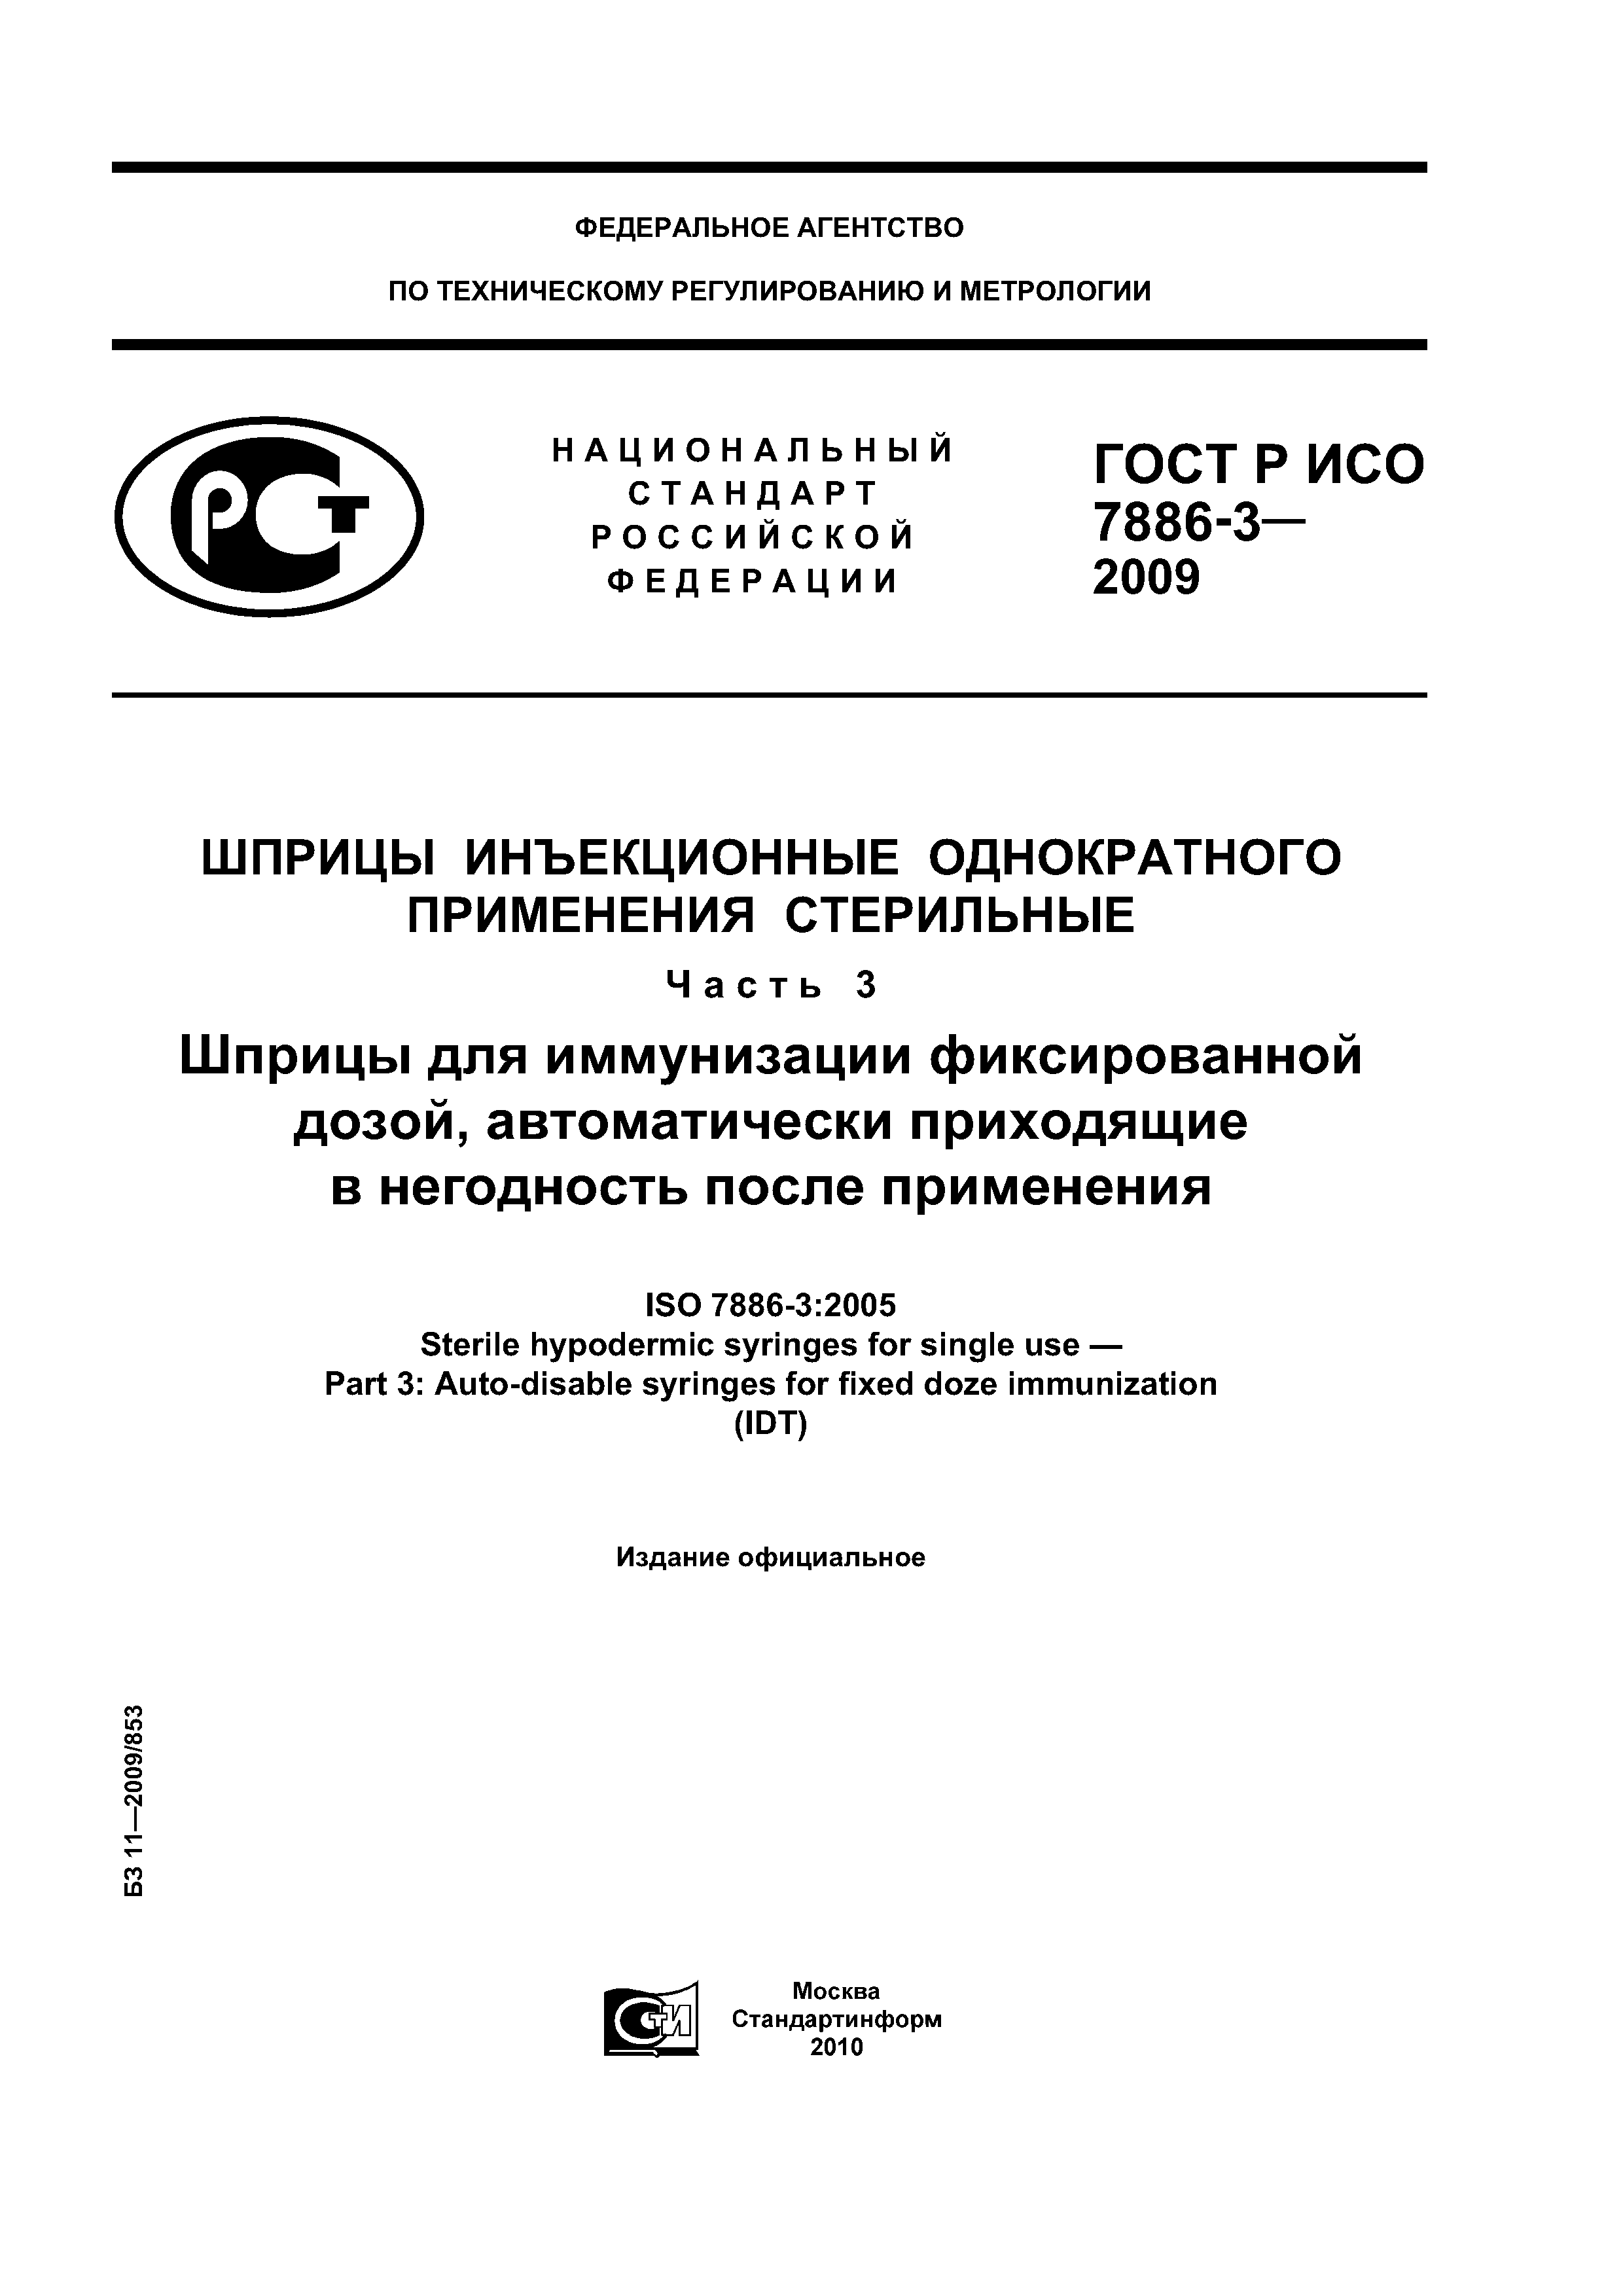 ГОСТ Р ИСО 7886-3-2009